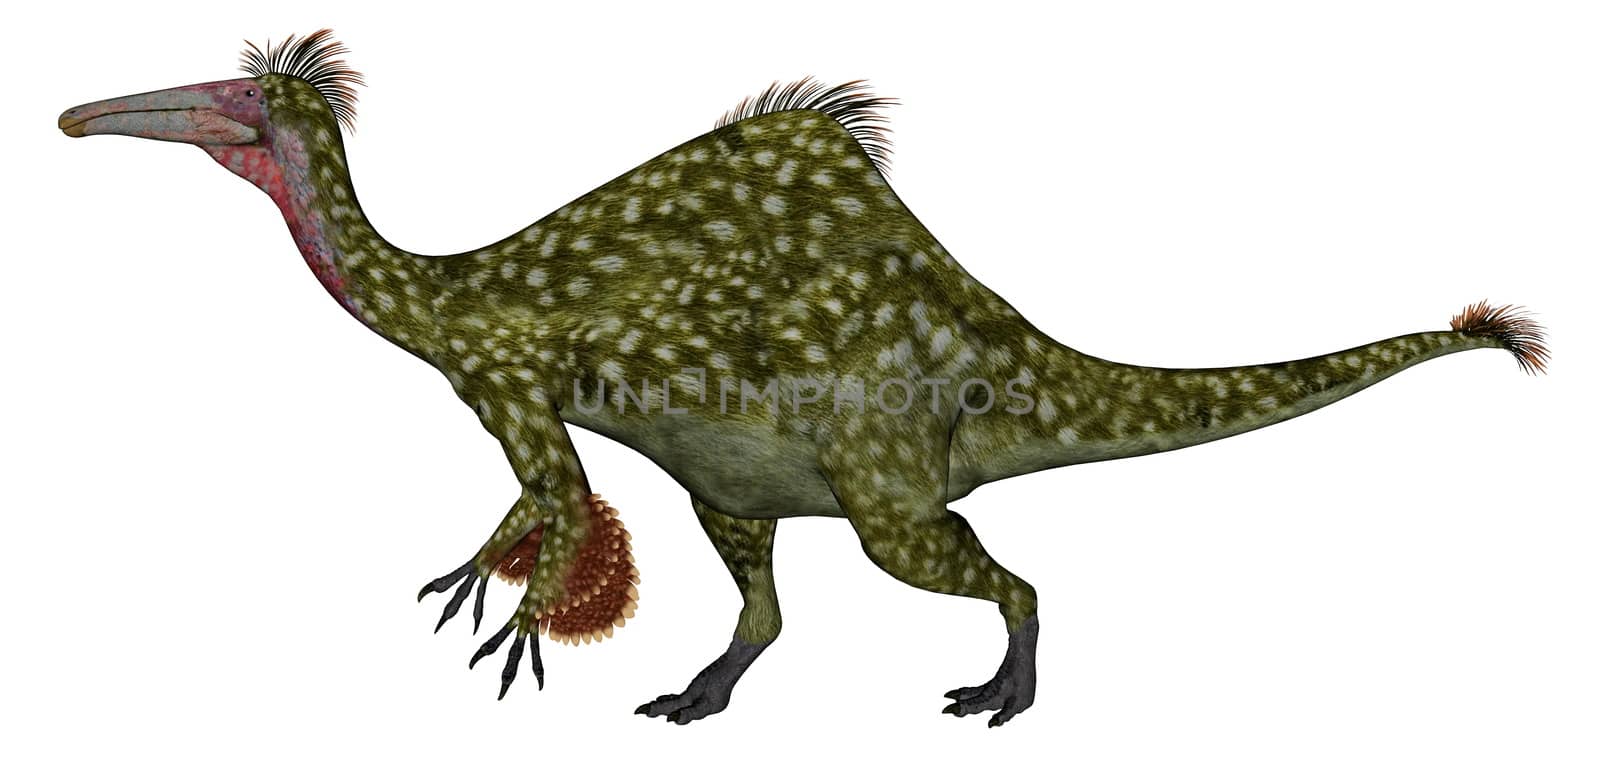 Deinocheirus dinosaur - 3D render by Elenaphotos21